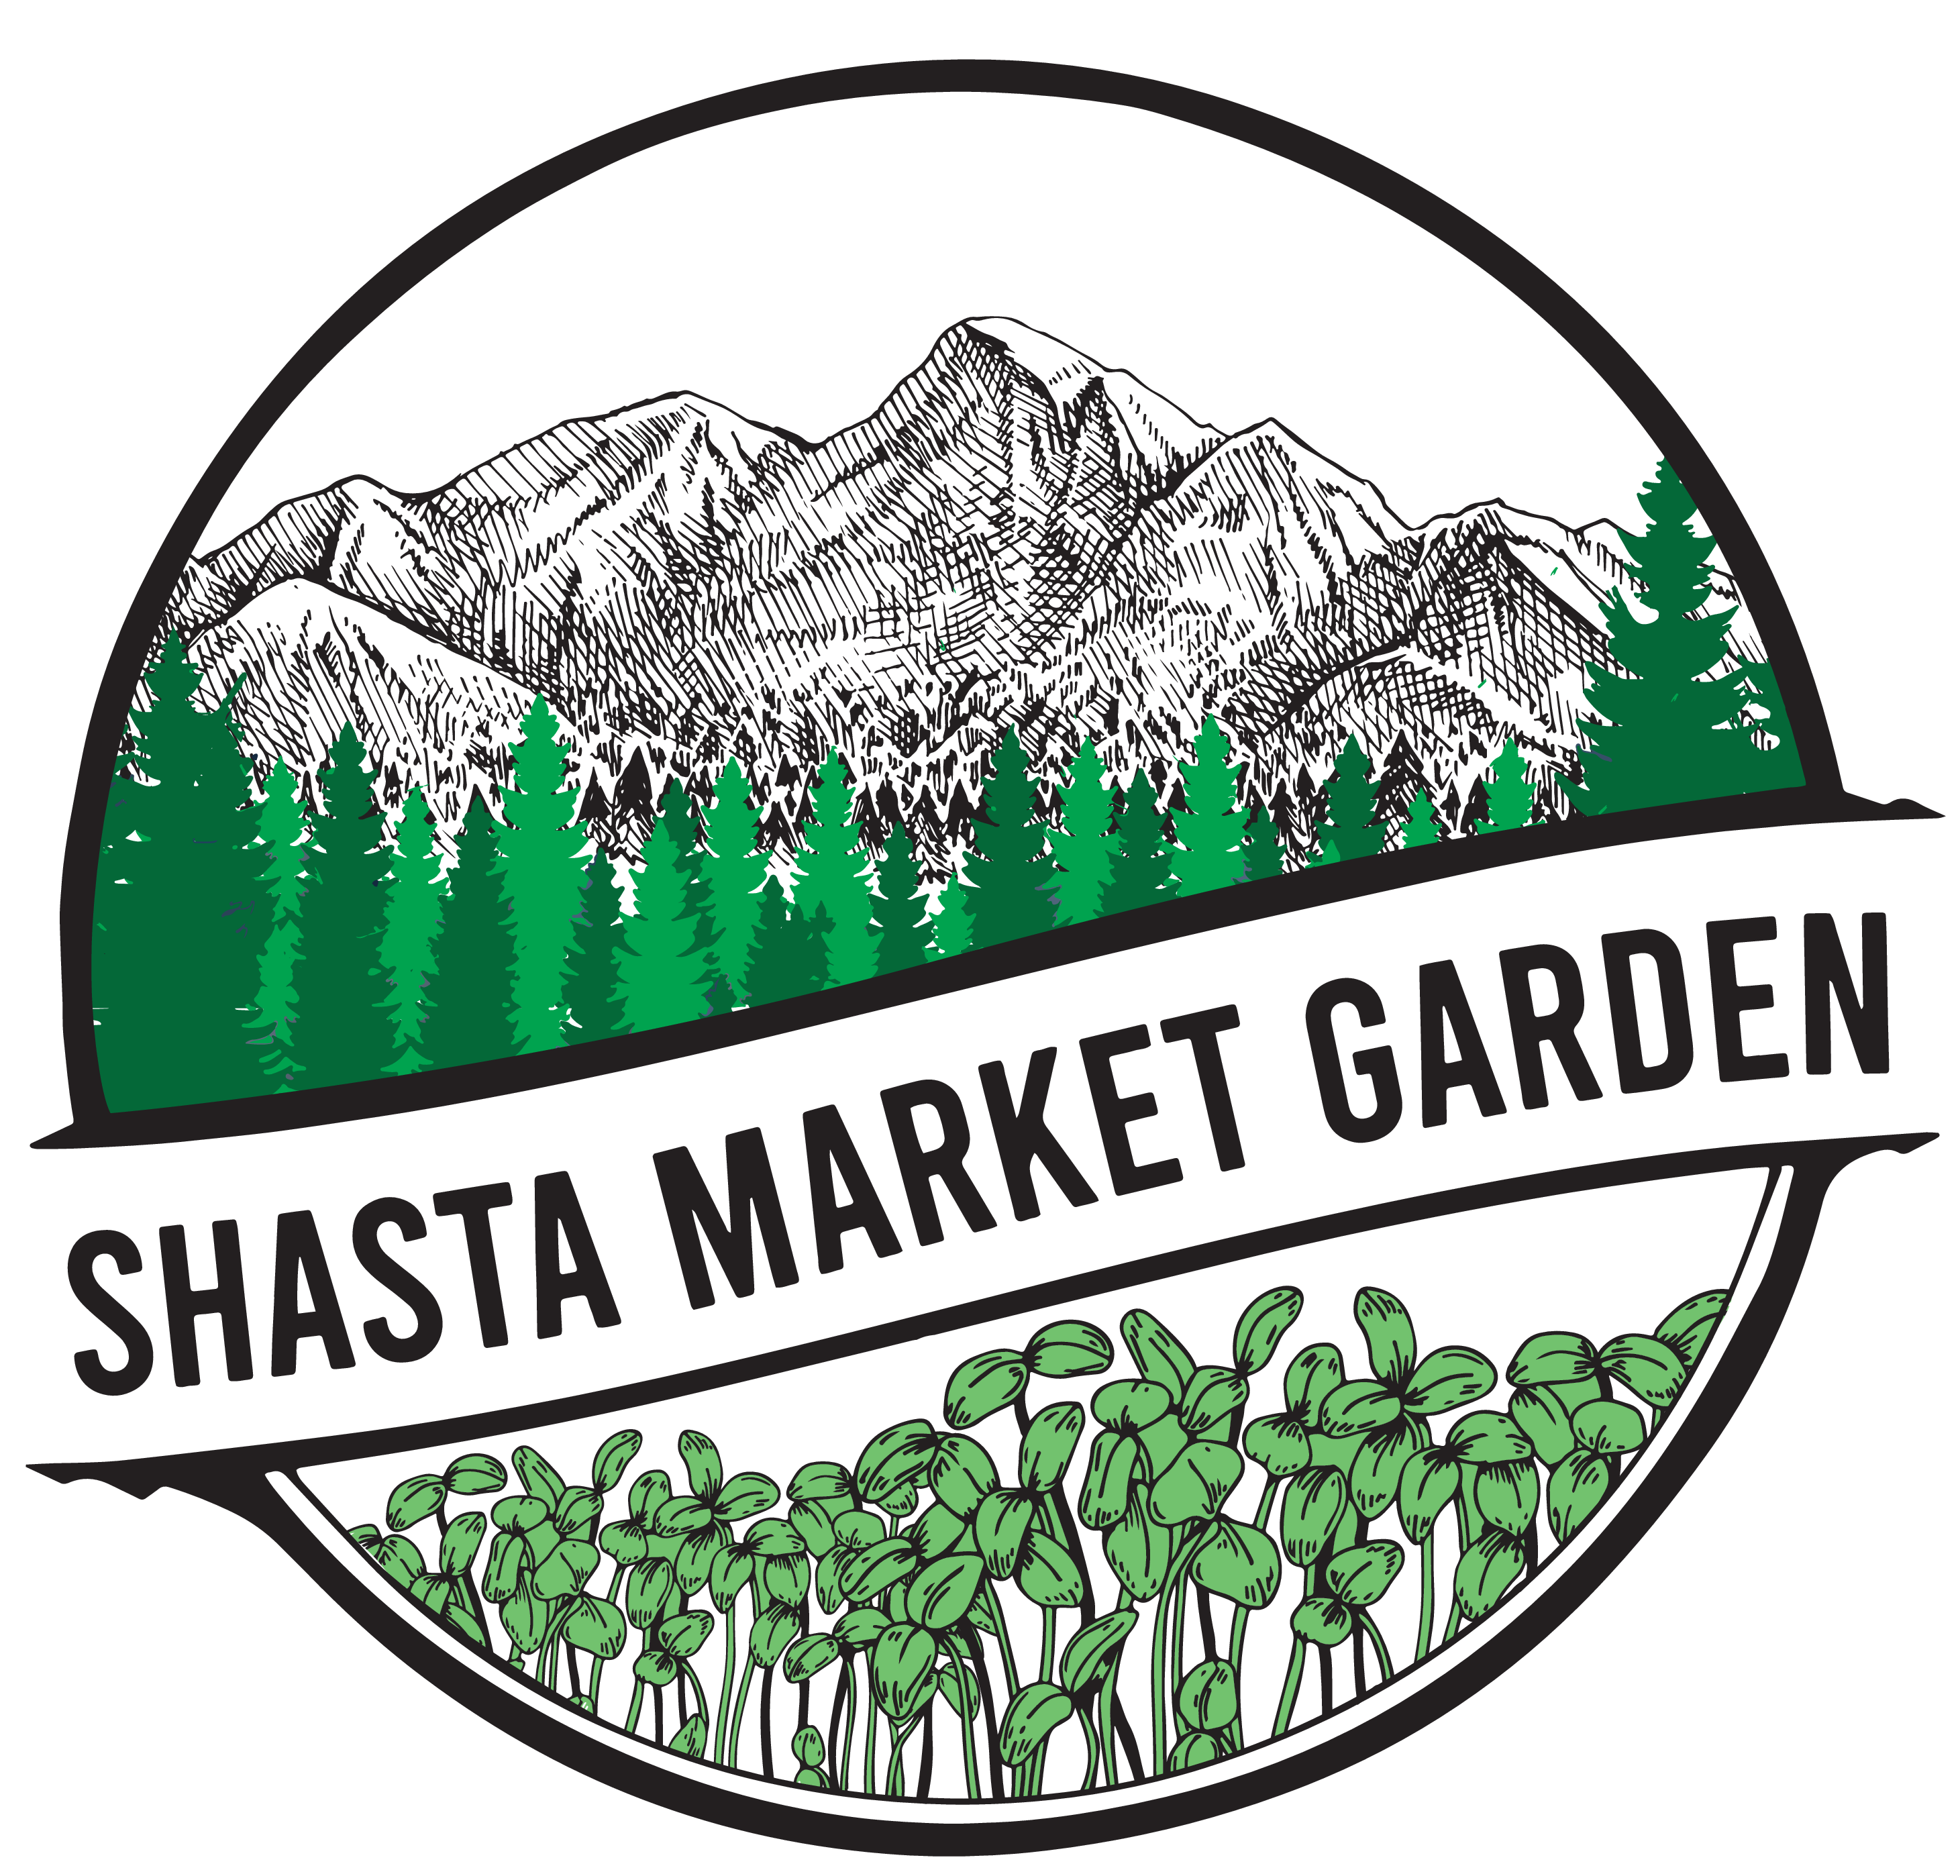 Shasta Market Garden